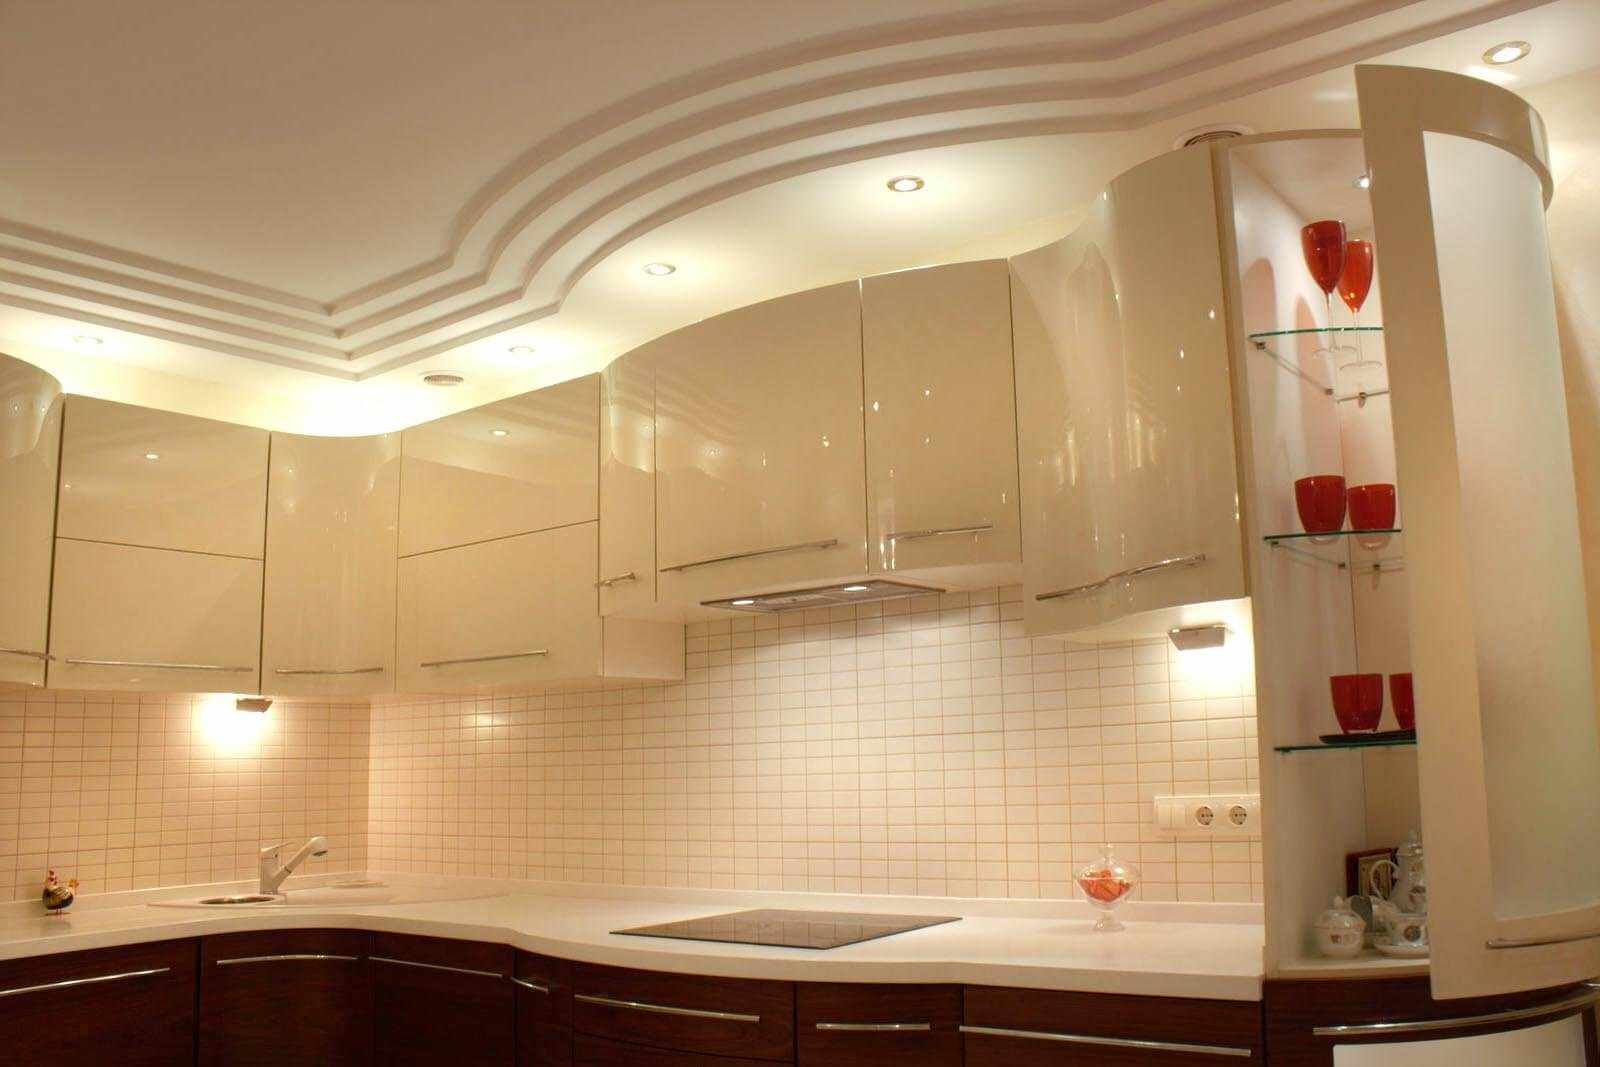 مثال على تصميم سقف المطبخ الخفيف